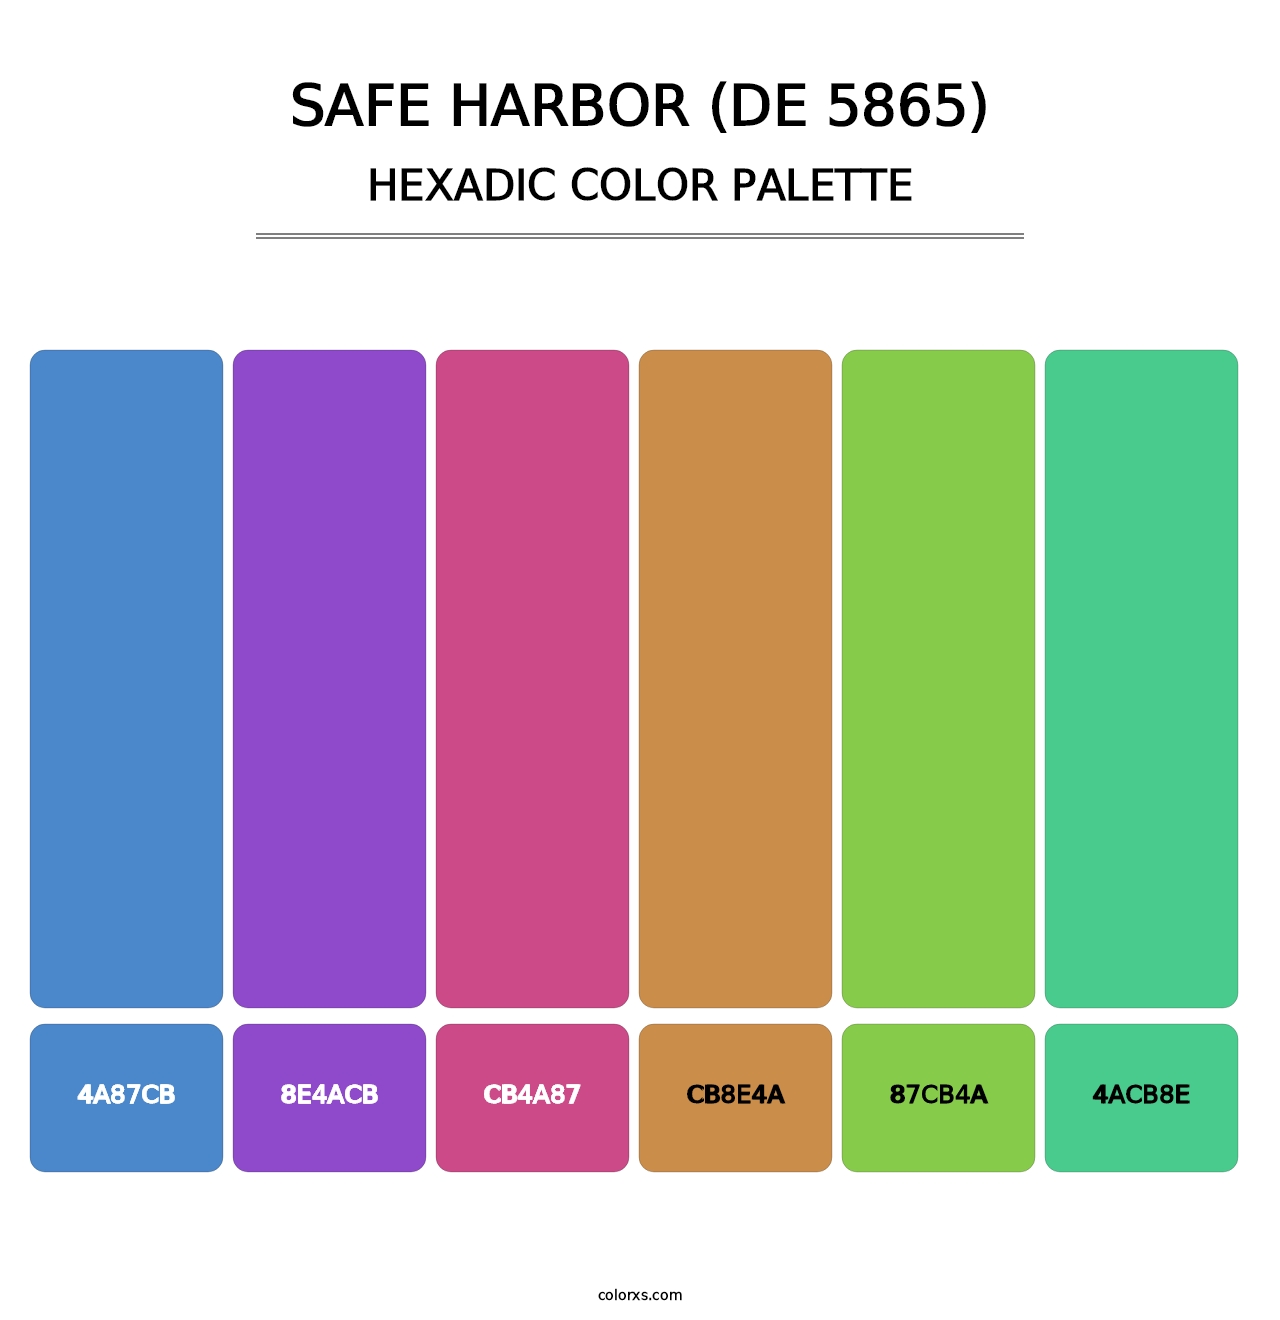 Safe Harbor (DE 5865) - Hexadic Color Palette